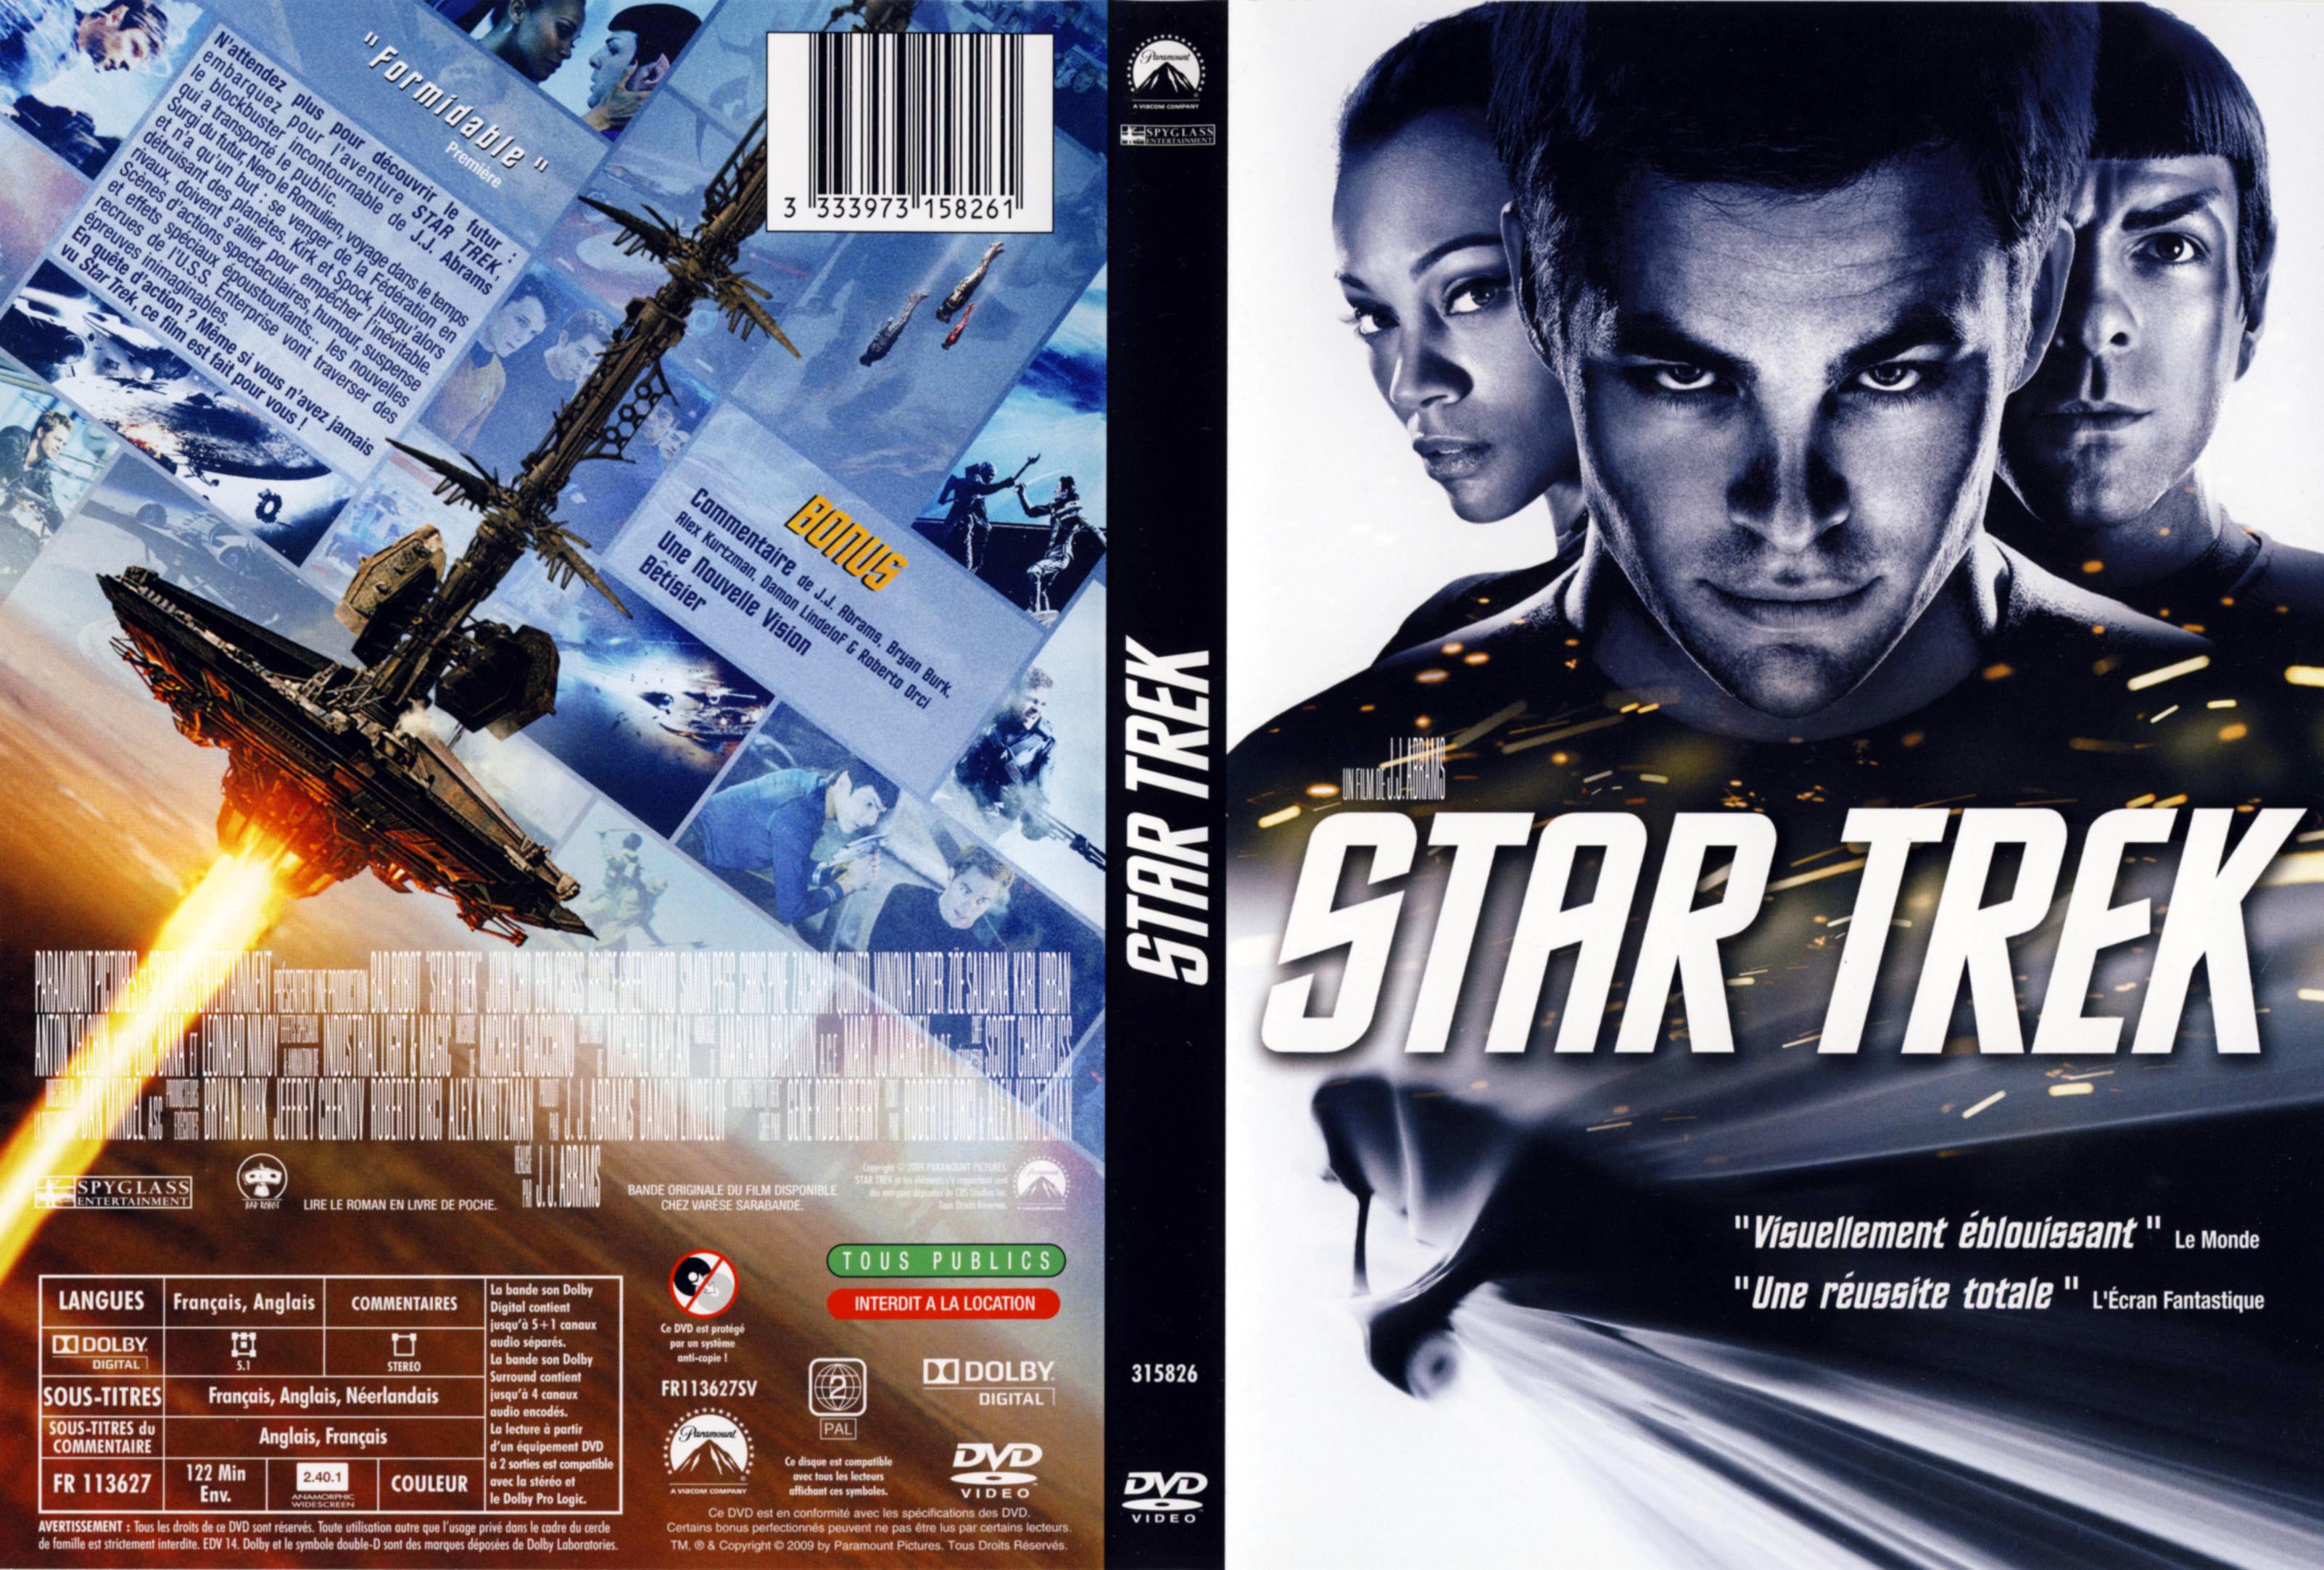 Jaquette DVD Star trek (2009)